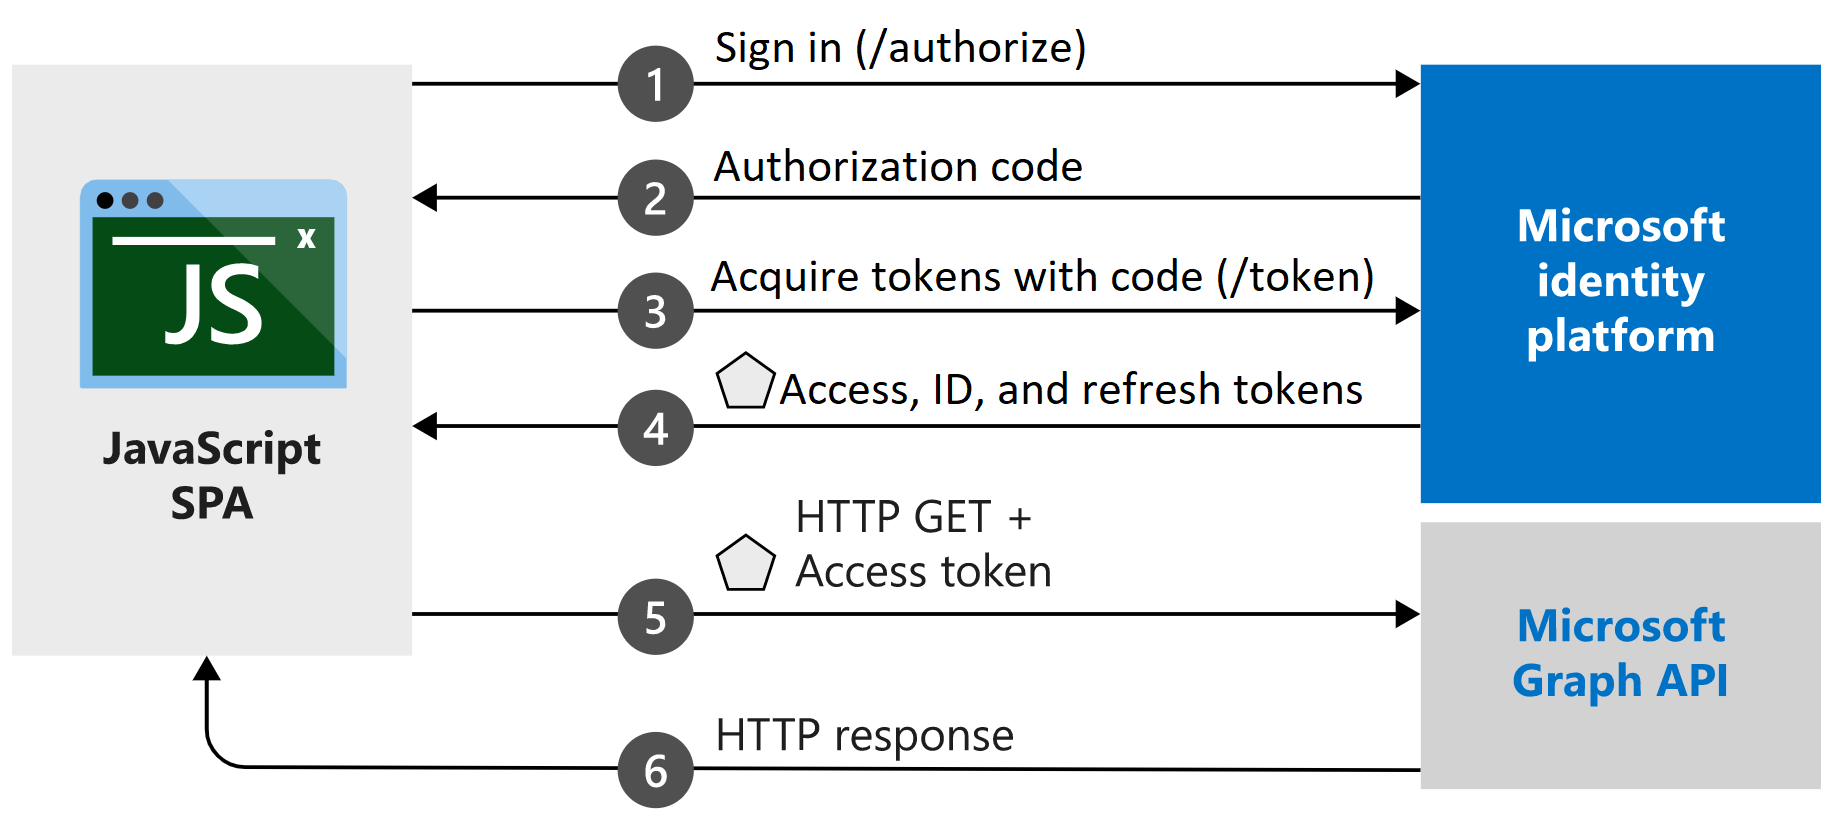 展示单页应用程序中的授权代码流的示意图